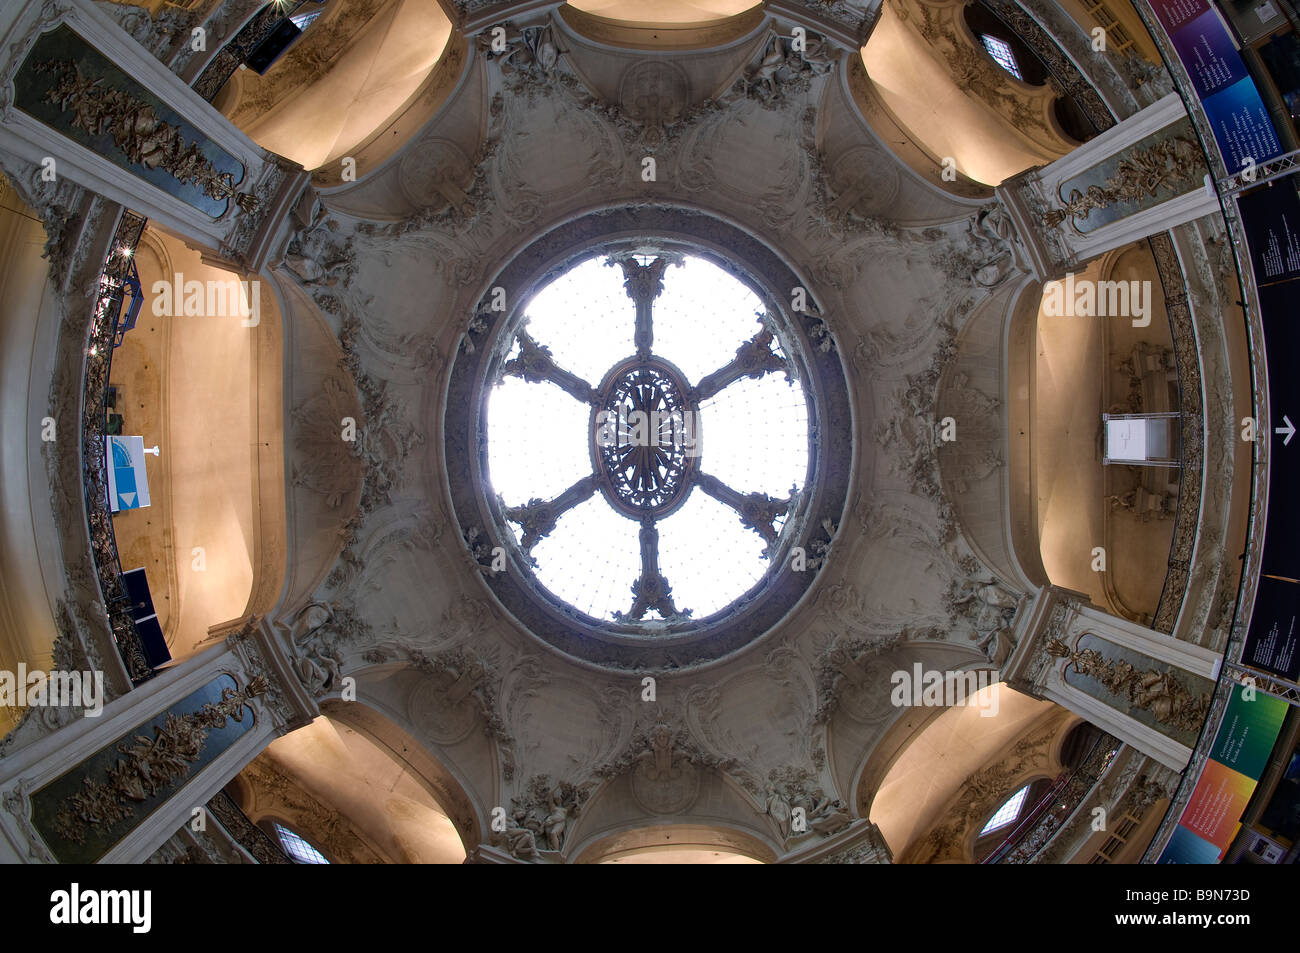 France, Paris, Palais de la Découverte (Palace of Discovery), the cupola Stock Photo